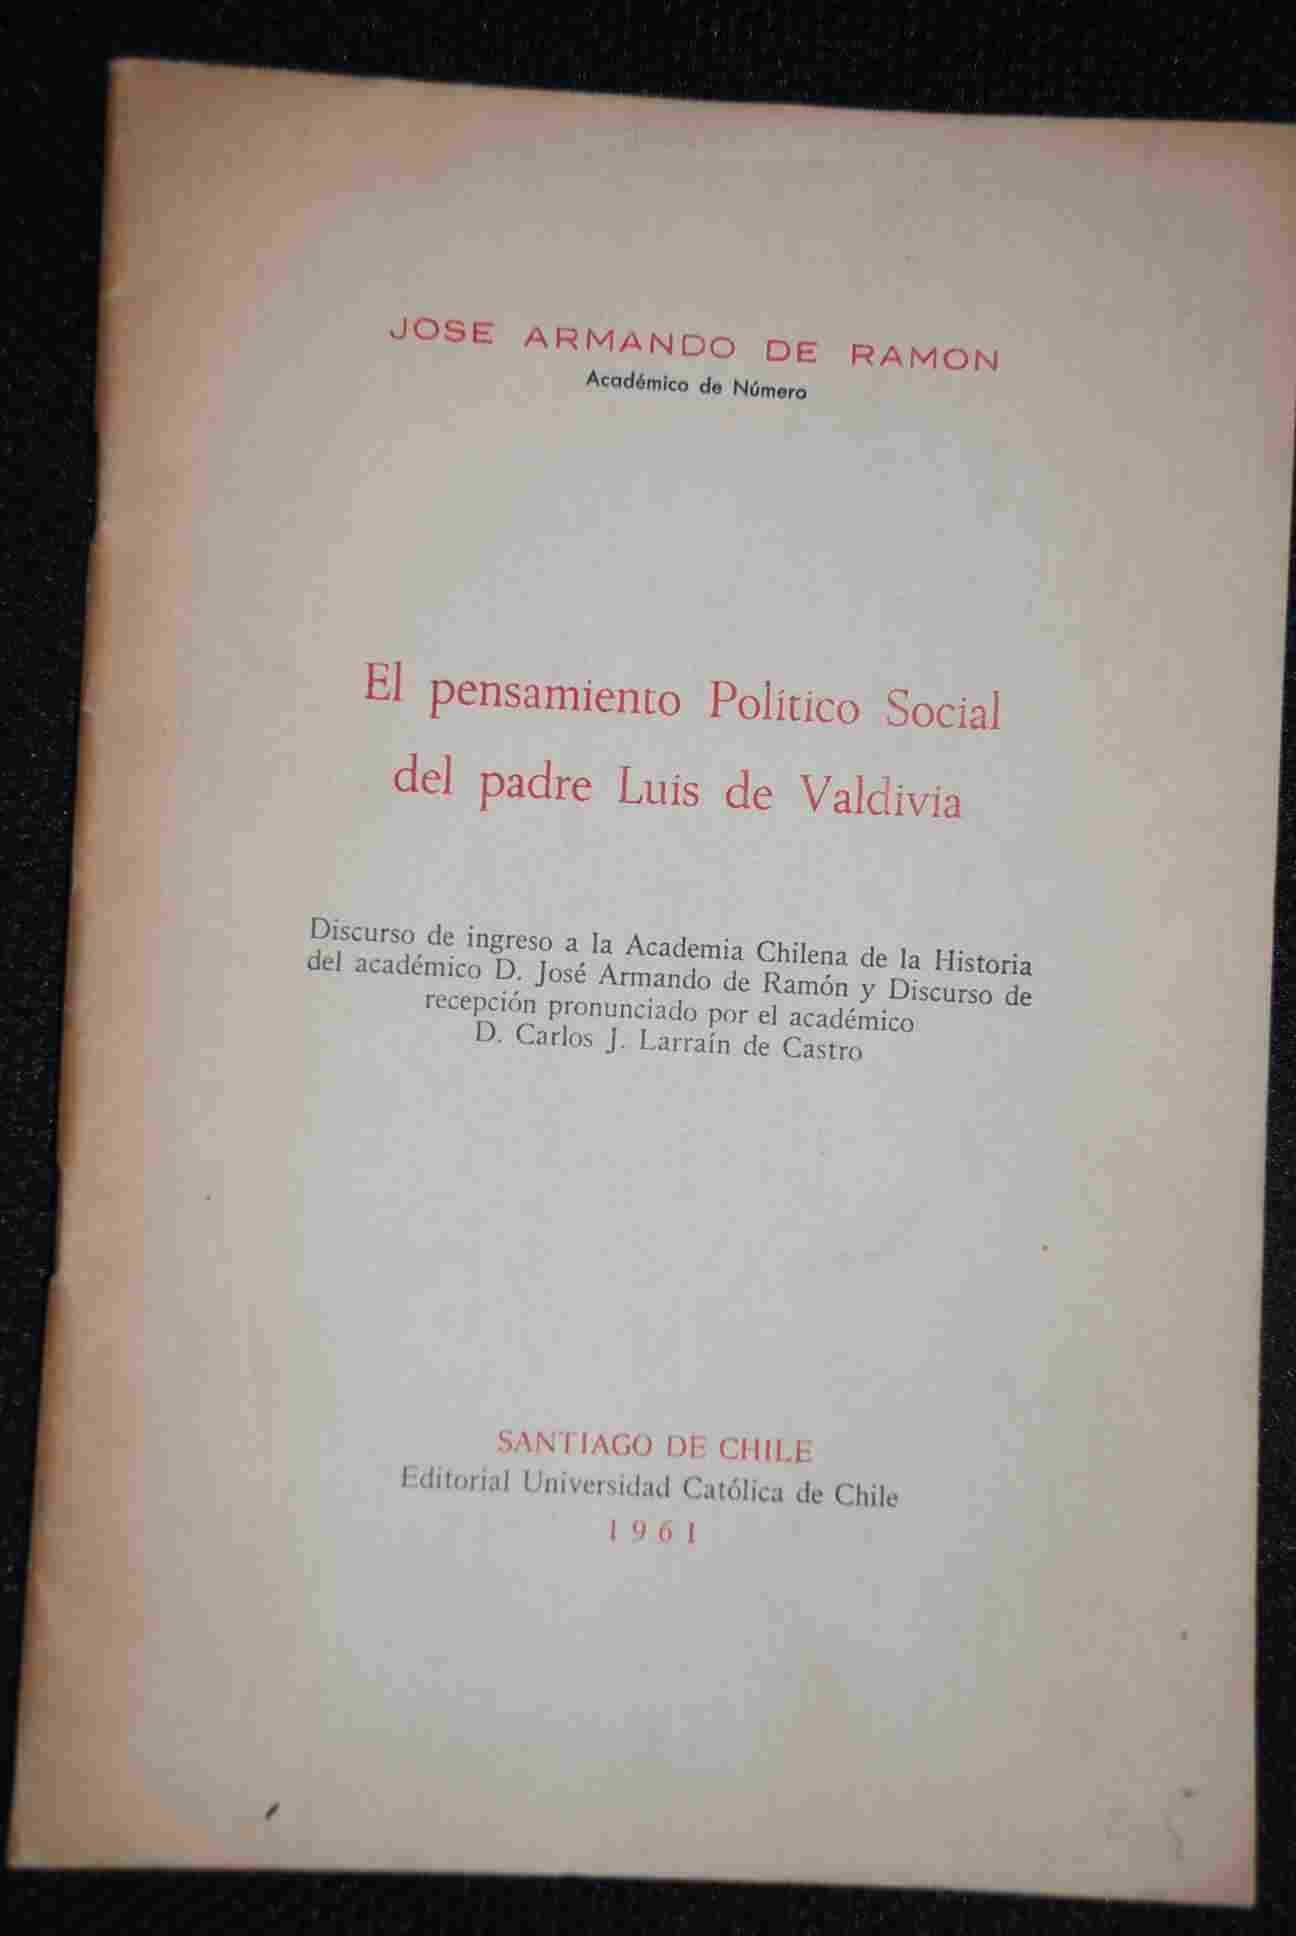 Jose Armando de Ramon - El pensamiento Politico Social del Padre Luis Valdivia 